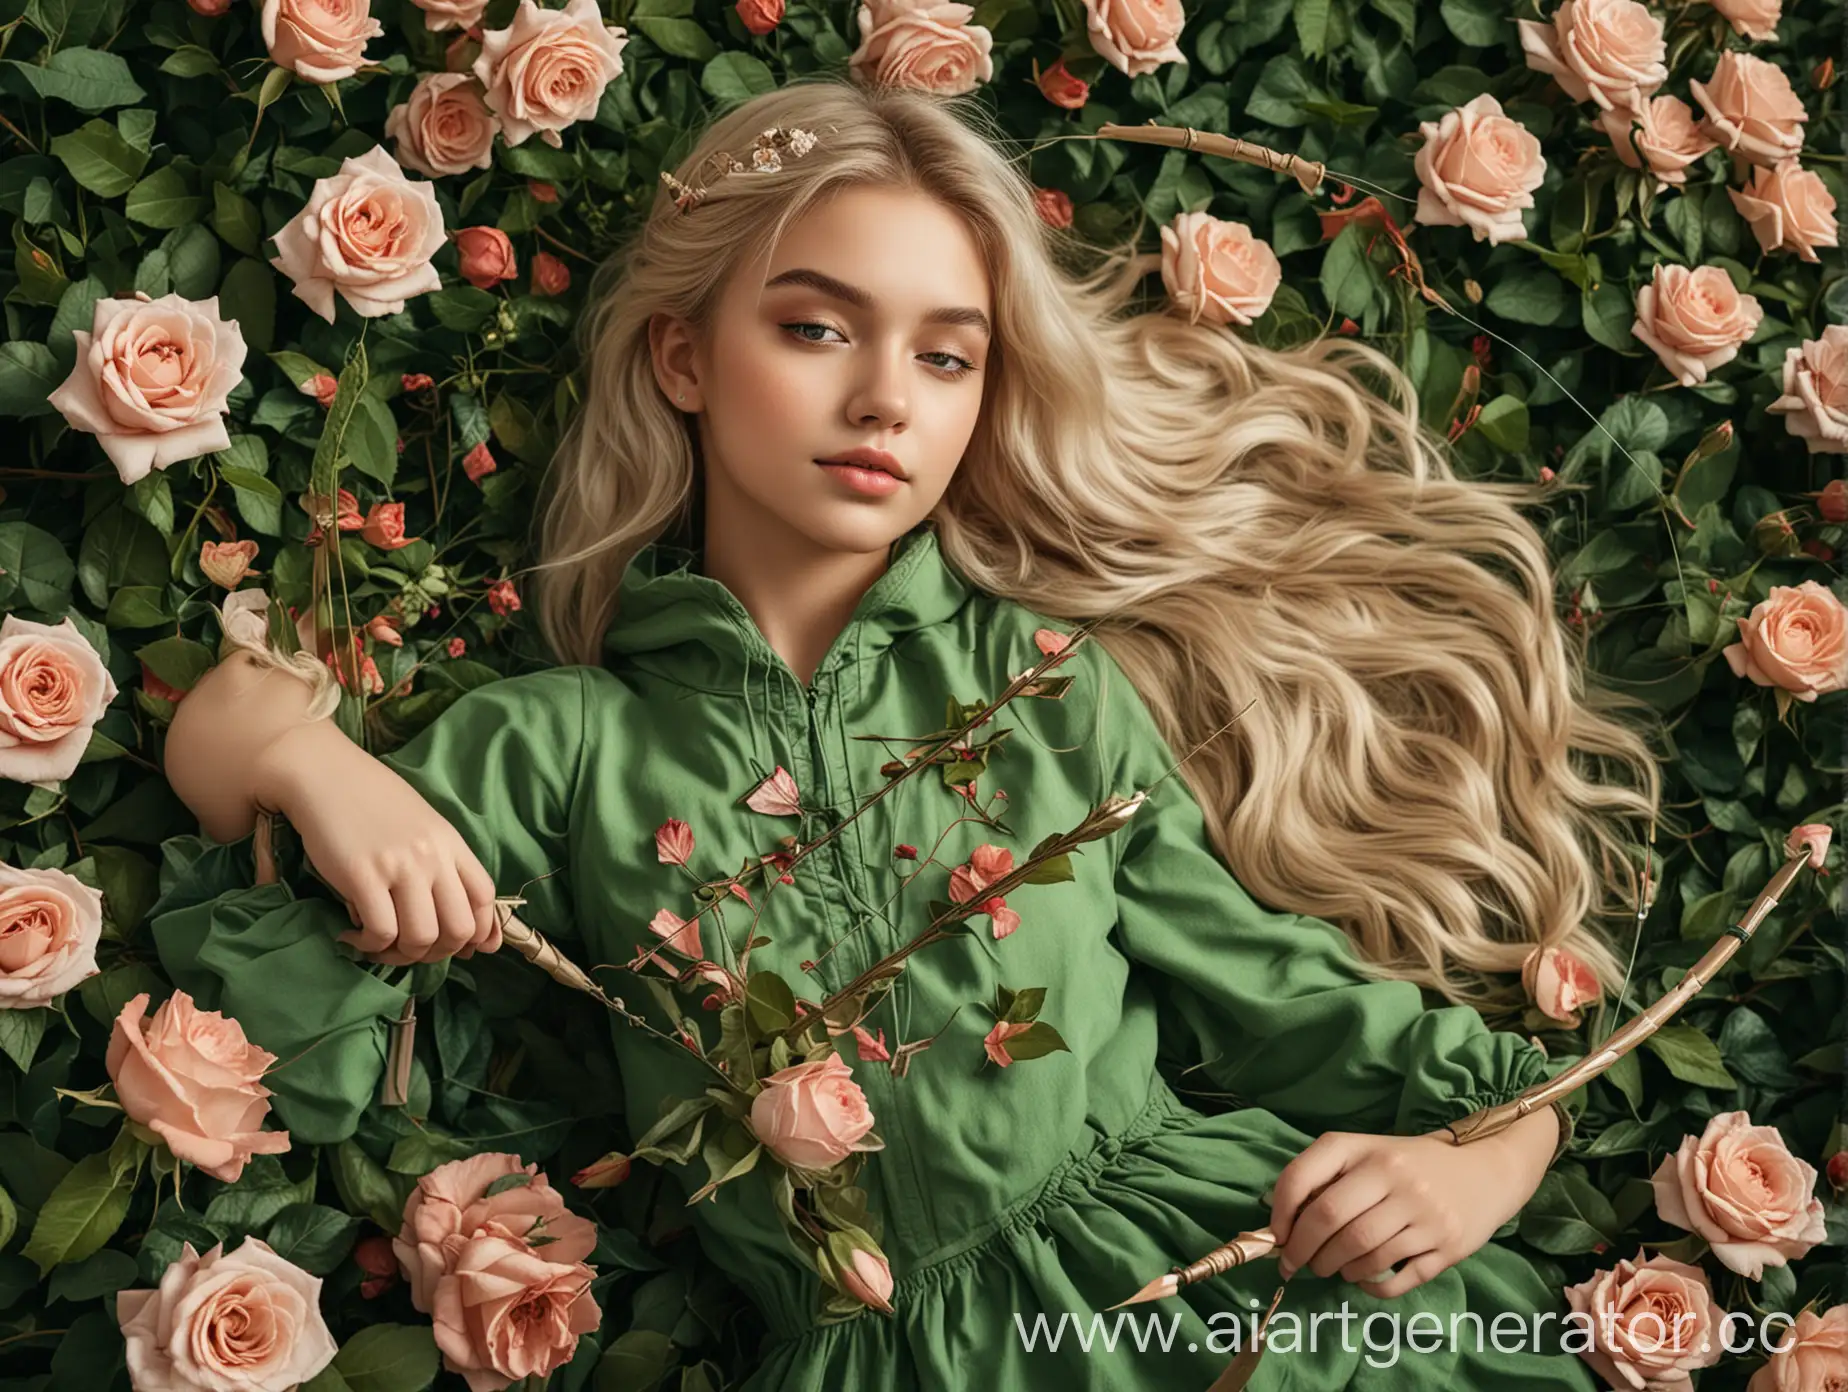 Девушка со светлыми волосами и зелёной одежде лежит в розах с луком и стрелой в руках